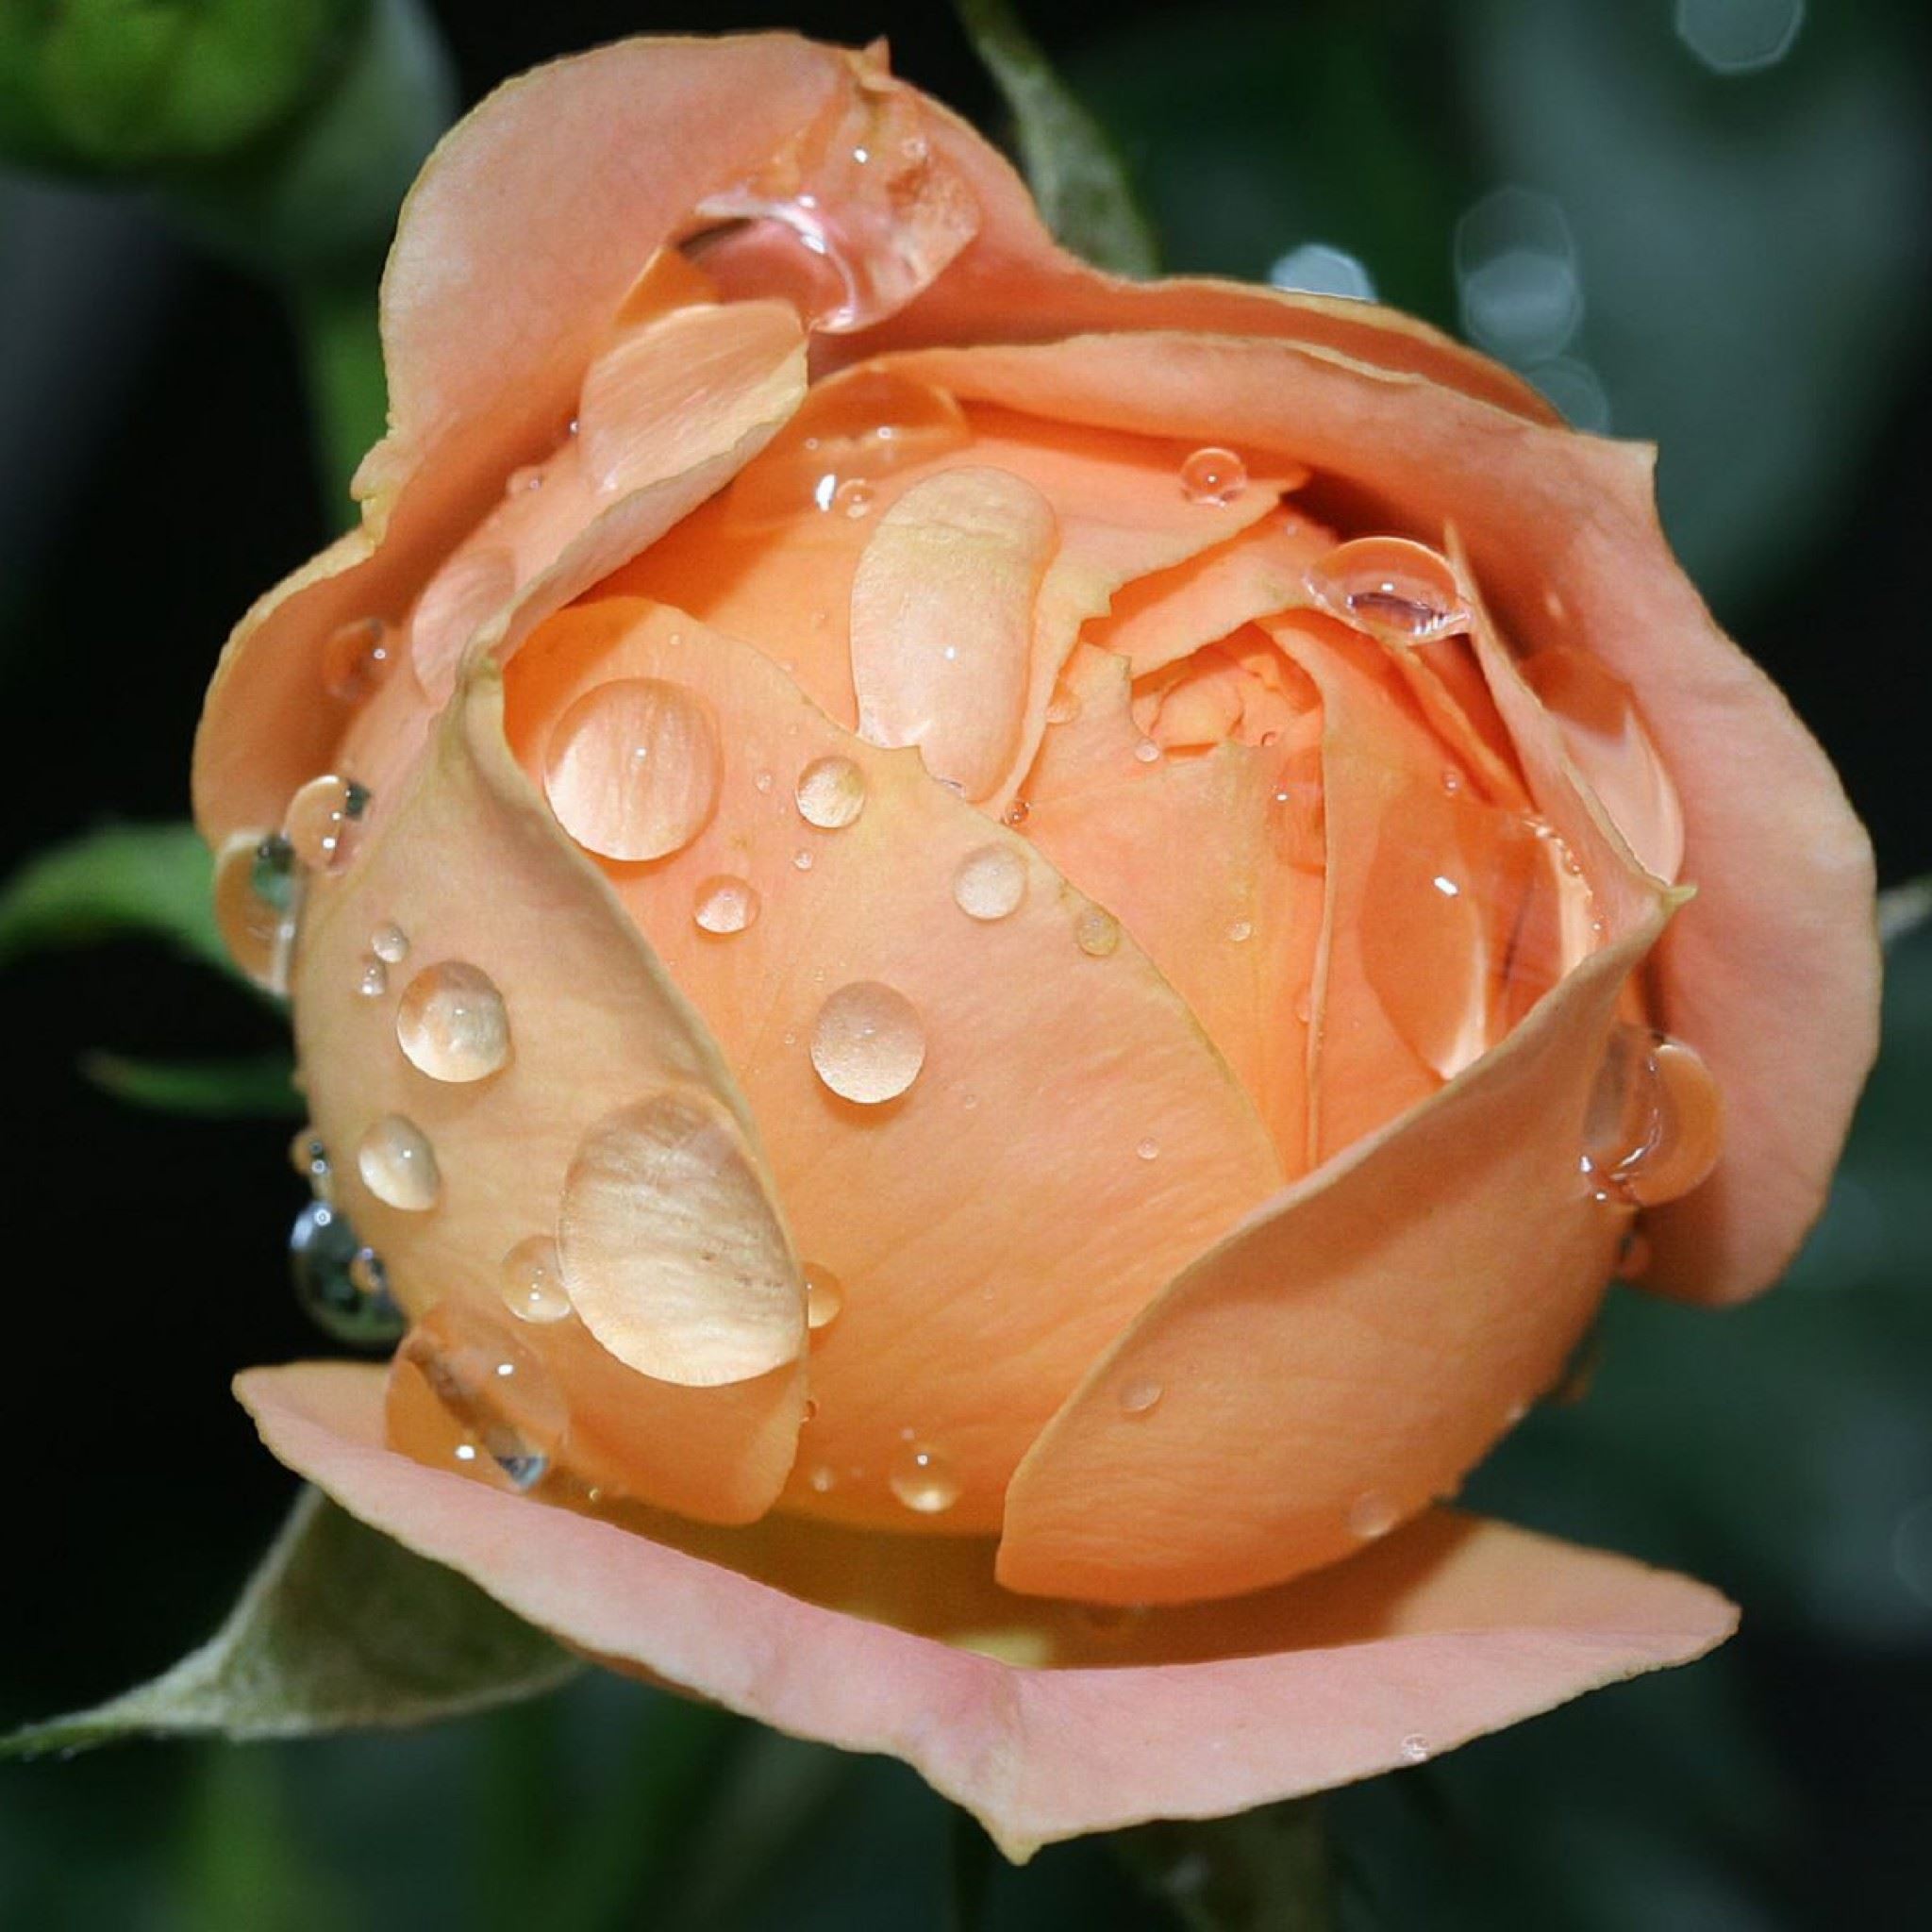 Wet Rose Bloom iPad Air wallpaper 